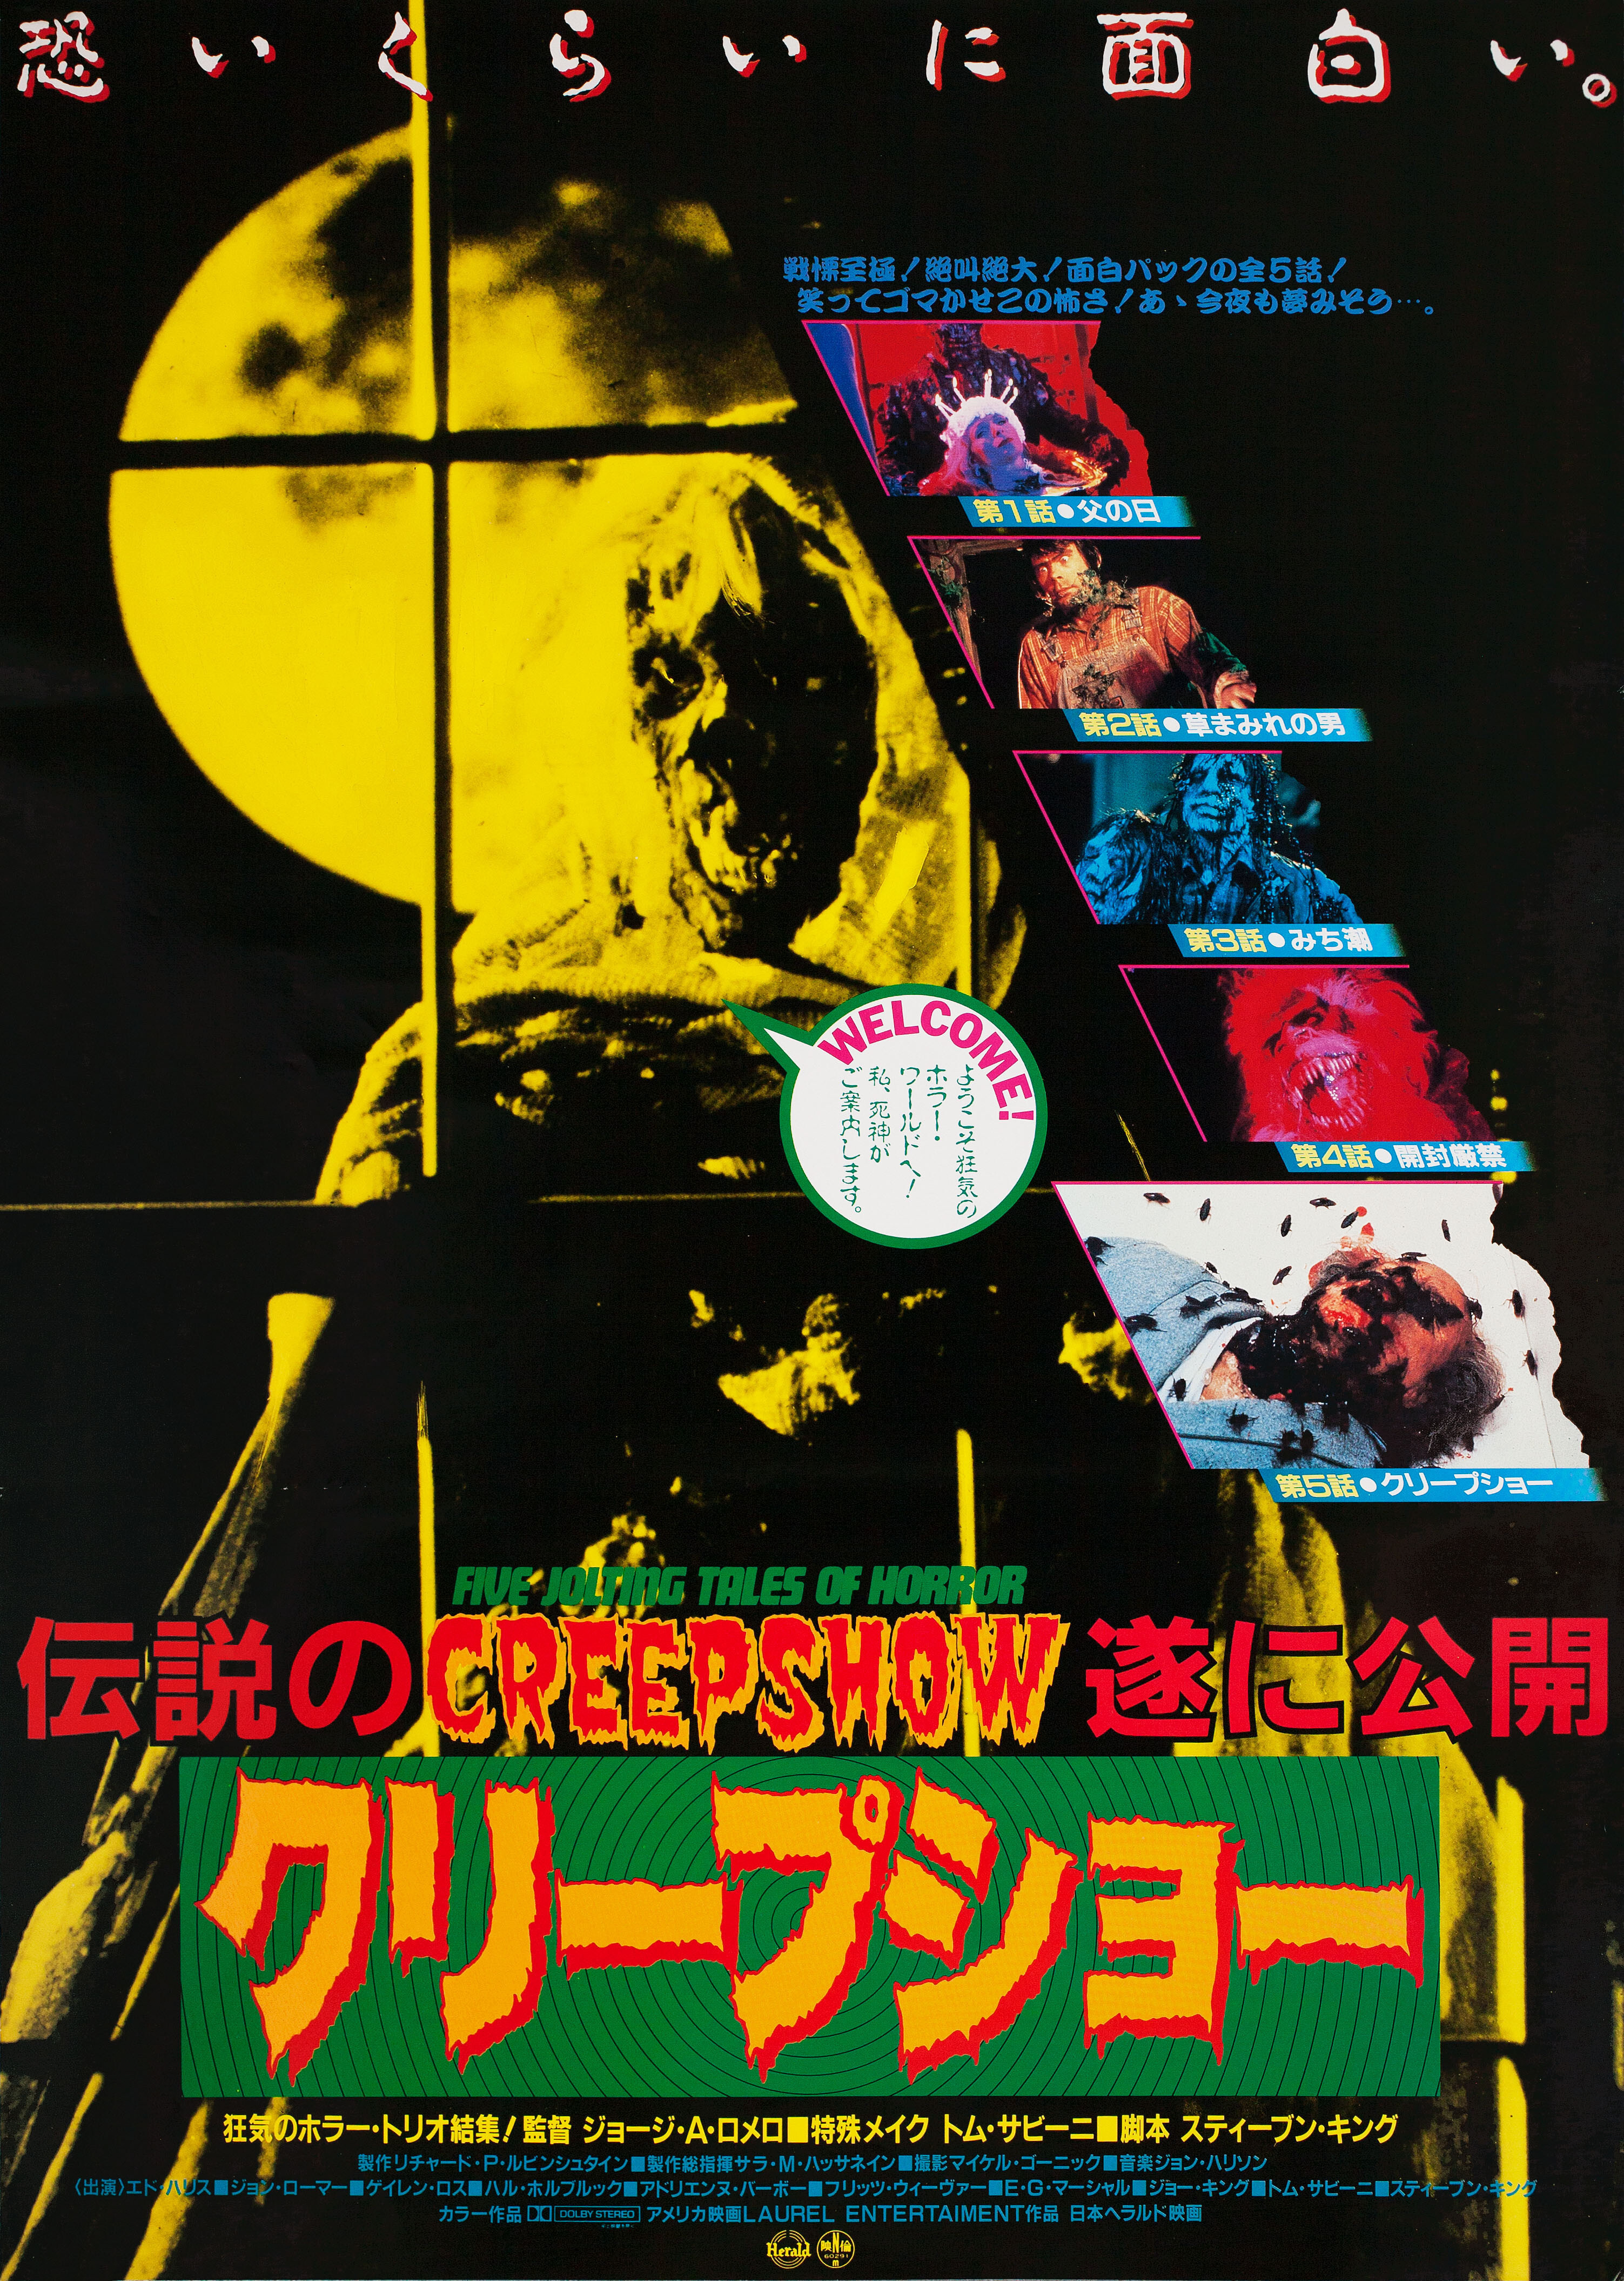 Калейдоскоп ужасов (Creepshow, 1982), режиссёр Джордж А. Ромеро, японский постер к фильму (ужасы, 1982)